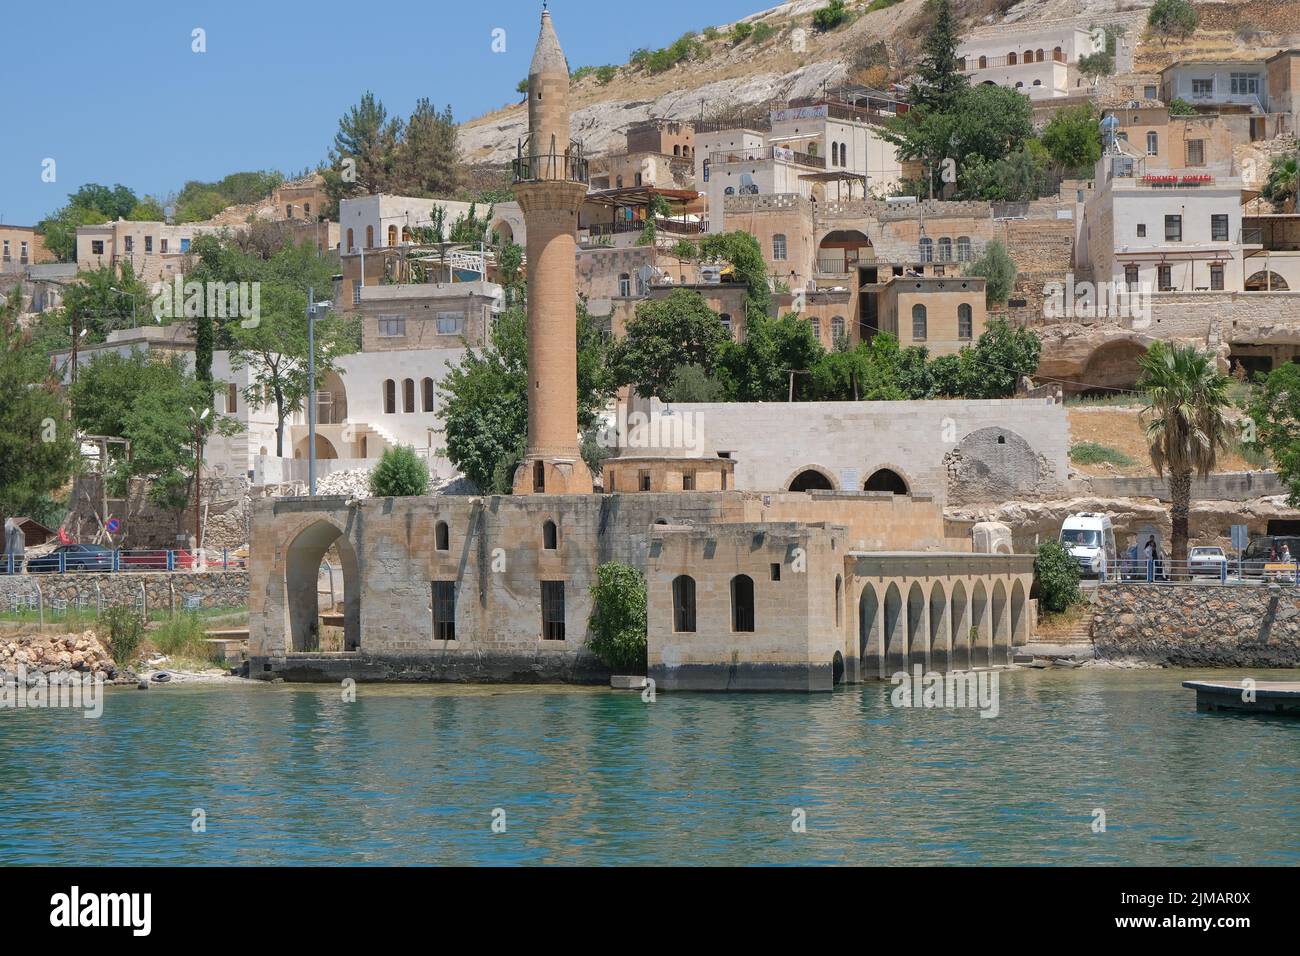 Grand Mosque in Halfeti, Local name in Halfeti Ulu Cami, sunken mosque in the water of euphrates river.  07.14.2022. anlurfa. Turkey. Stock Photo